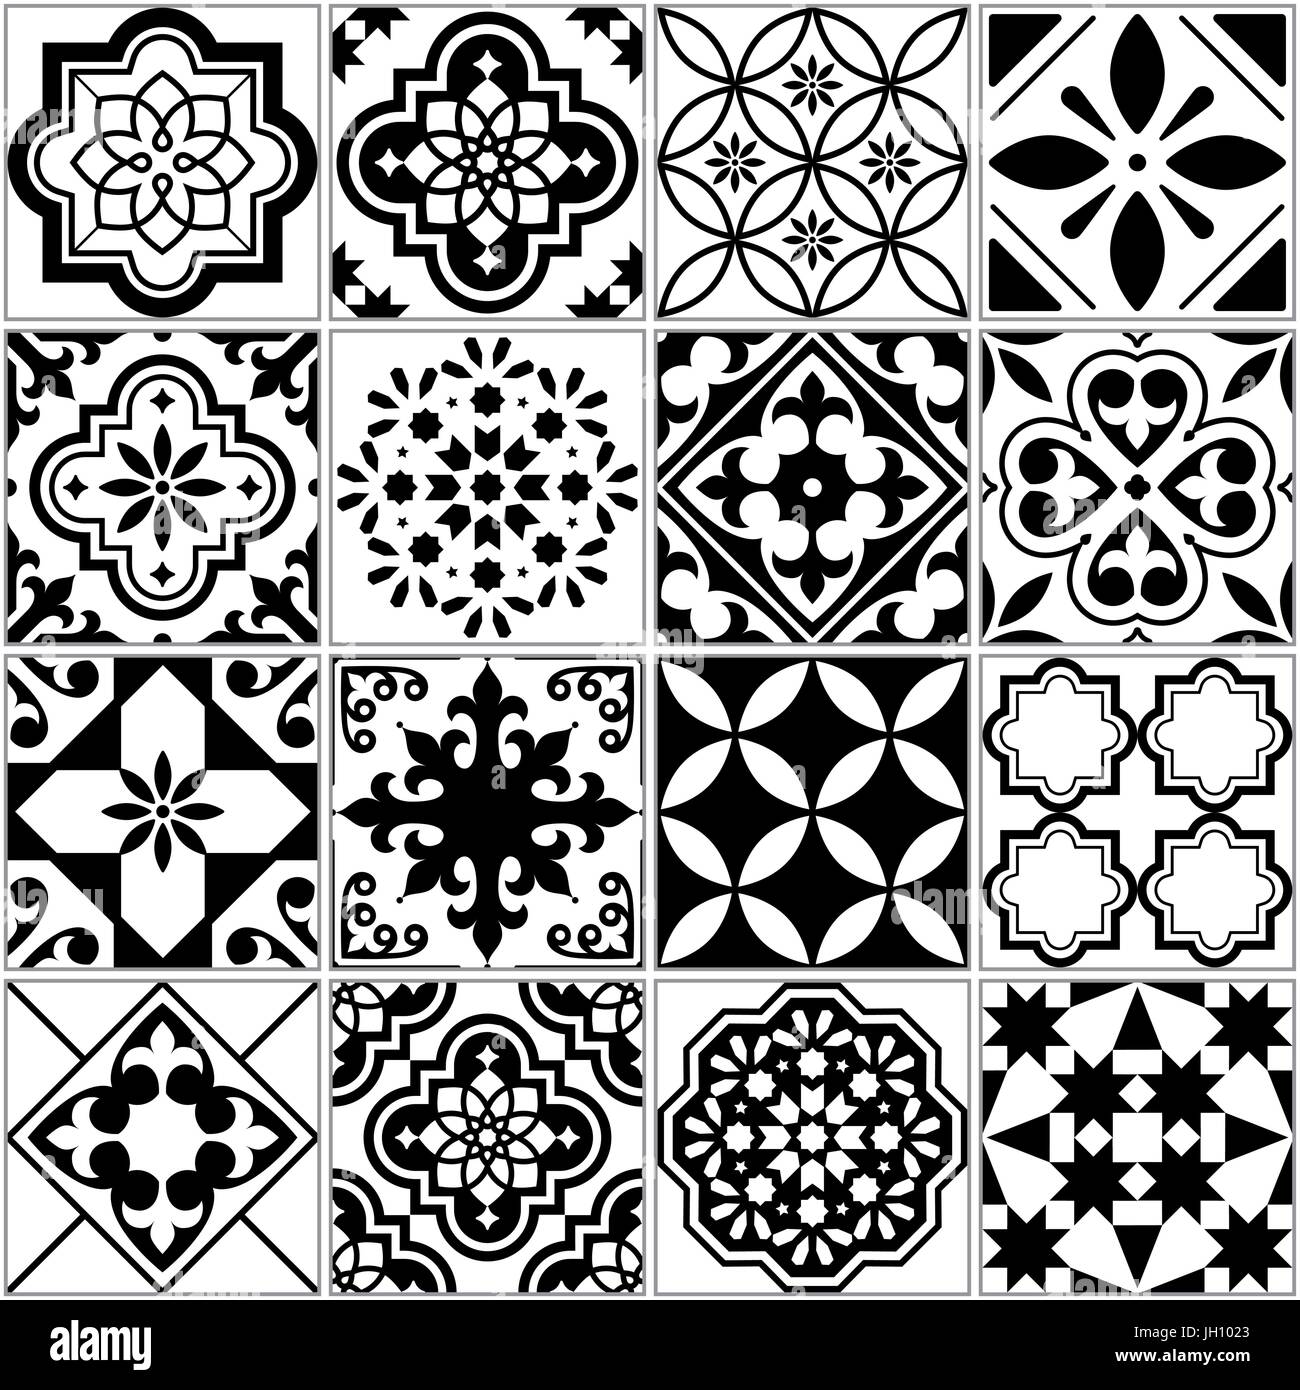 Vektor-Fliesenmuster, Lissabon floralen Mosaik, mediterrane nahtlose schwarz-weiß ornament Stock Vektor